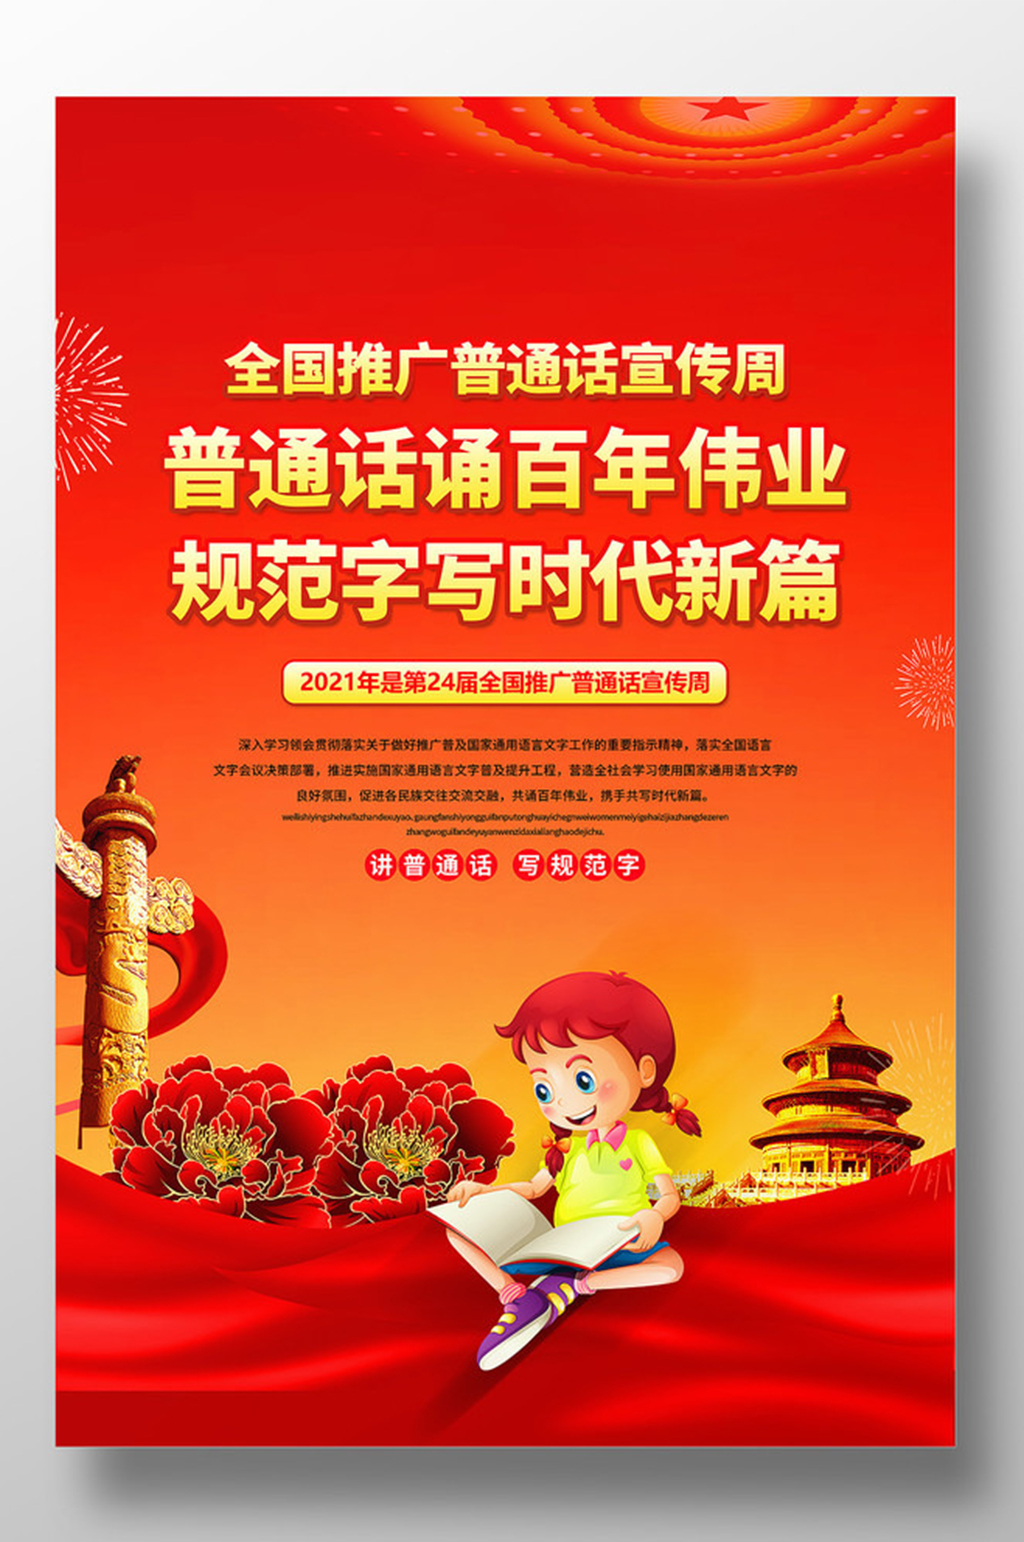 红色推广普通话宣传周宣传海报